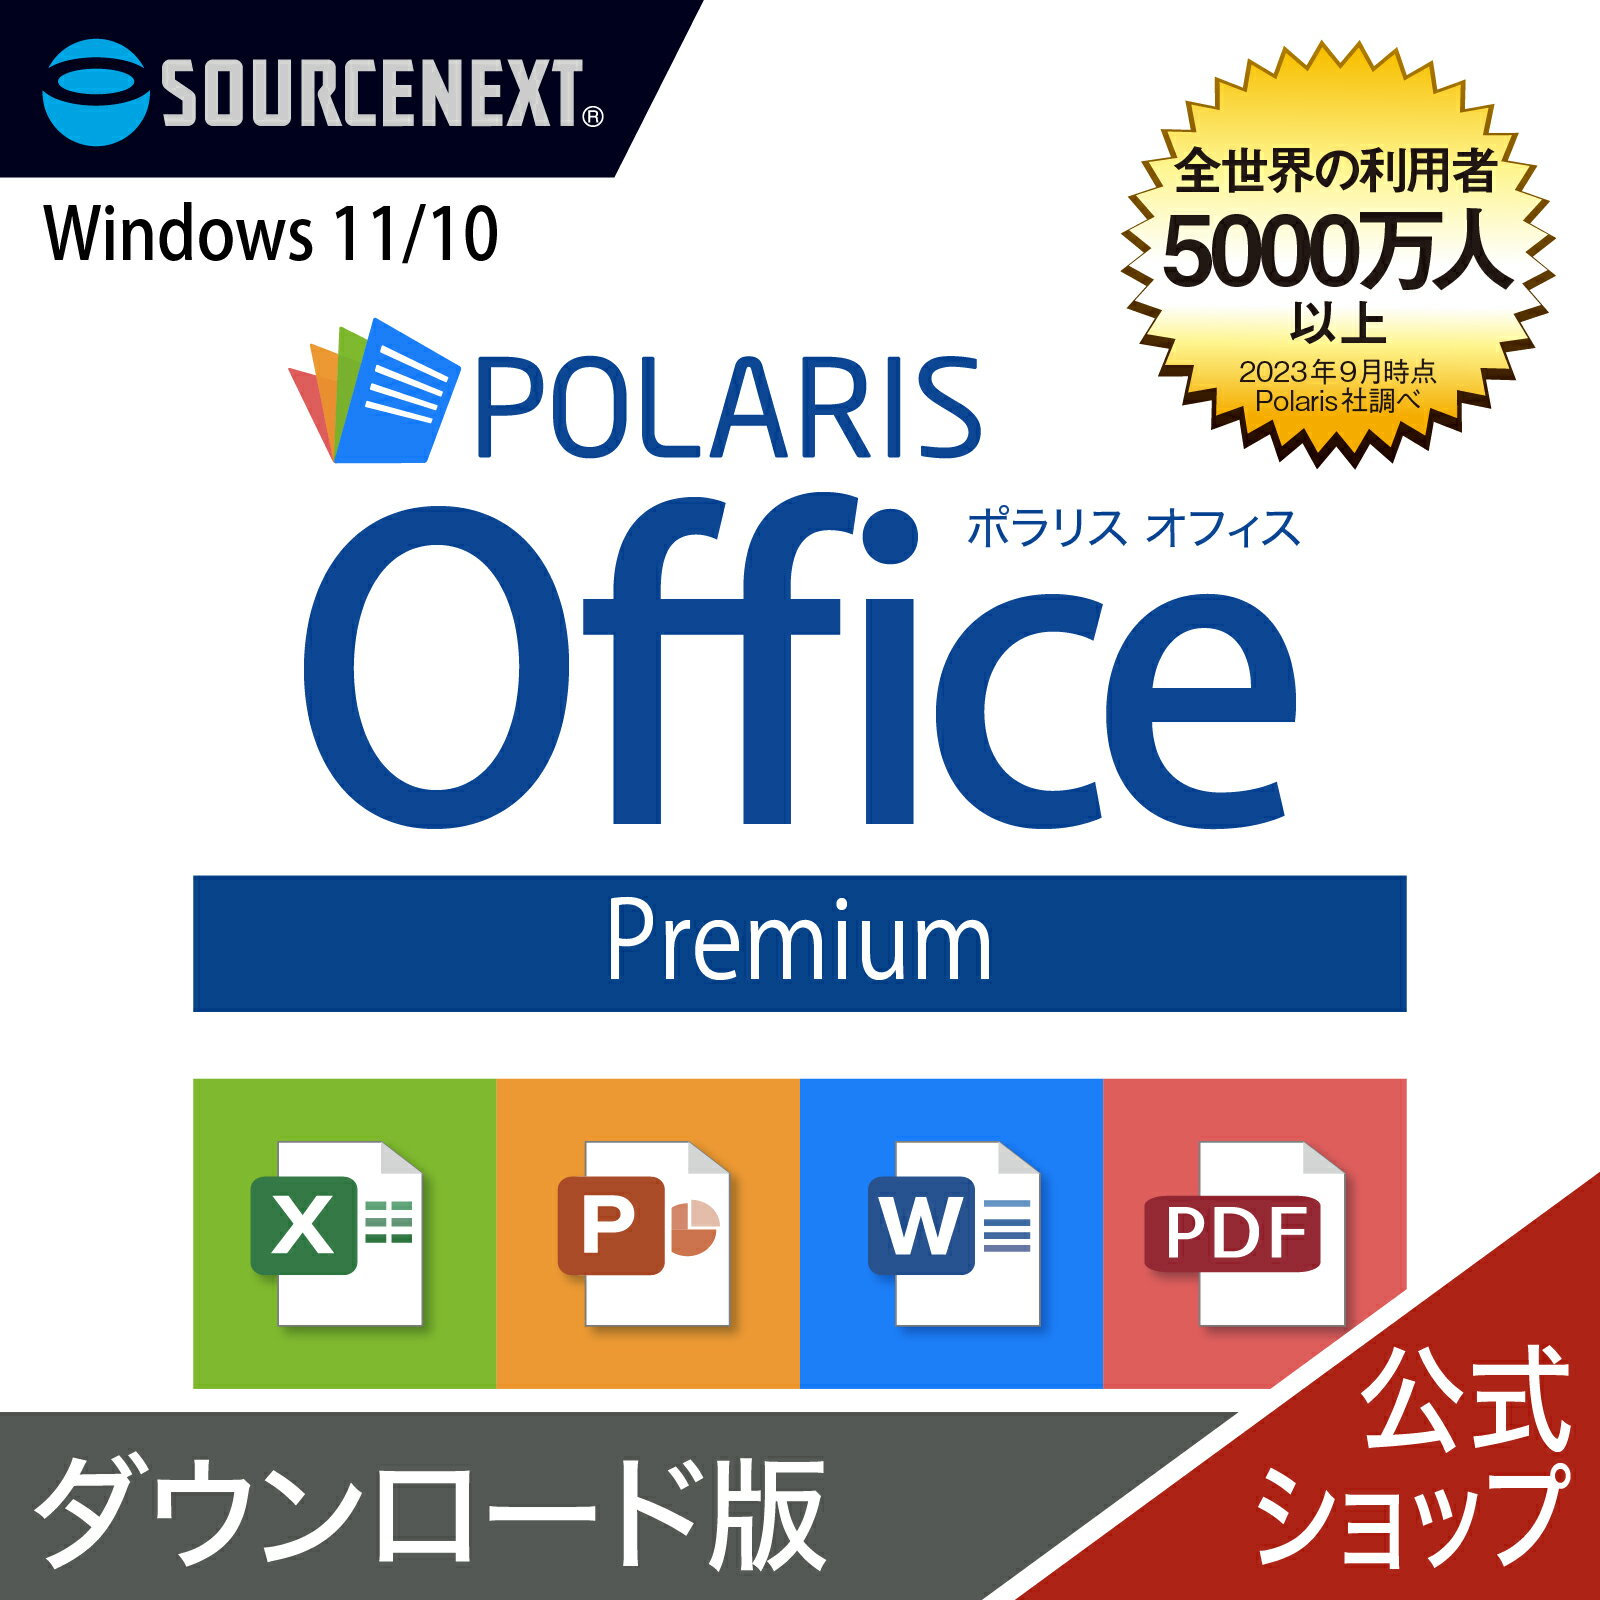  }\艿i Polaris Office Premium@ _E[h DL_SNR [Windowsp][ItBX\tg] |X Microsoft Office ItBX ݊ Excel PowerPoint Word p[|Cg GNZ\tg [h